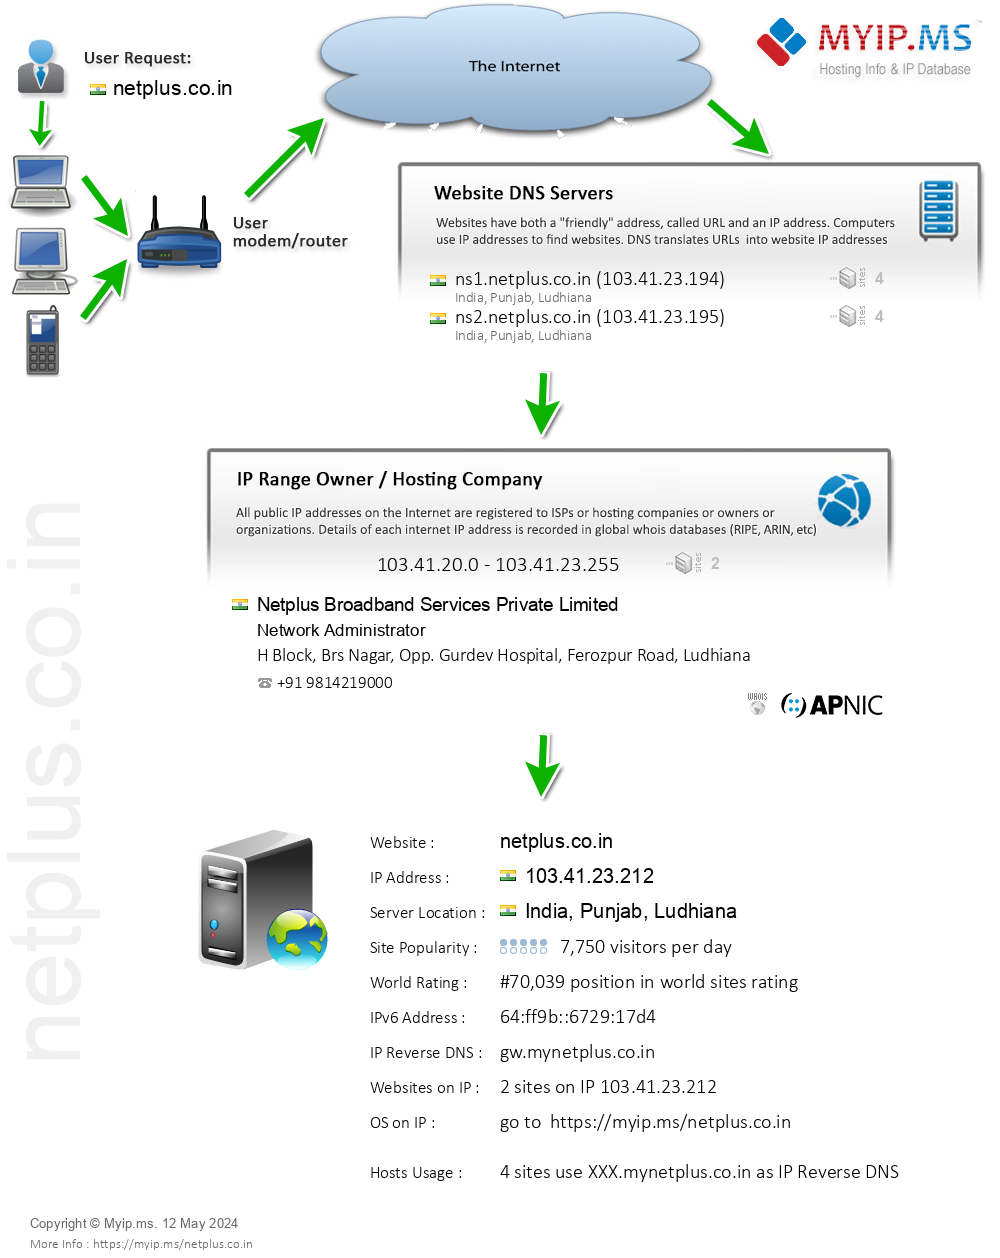 Netplus.co.in - Website Hosting Visual IP Diagram